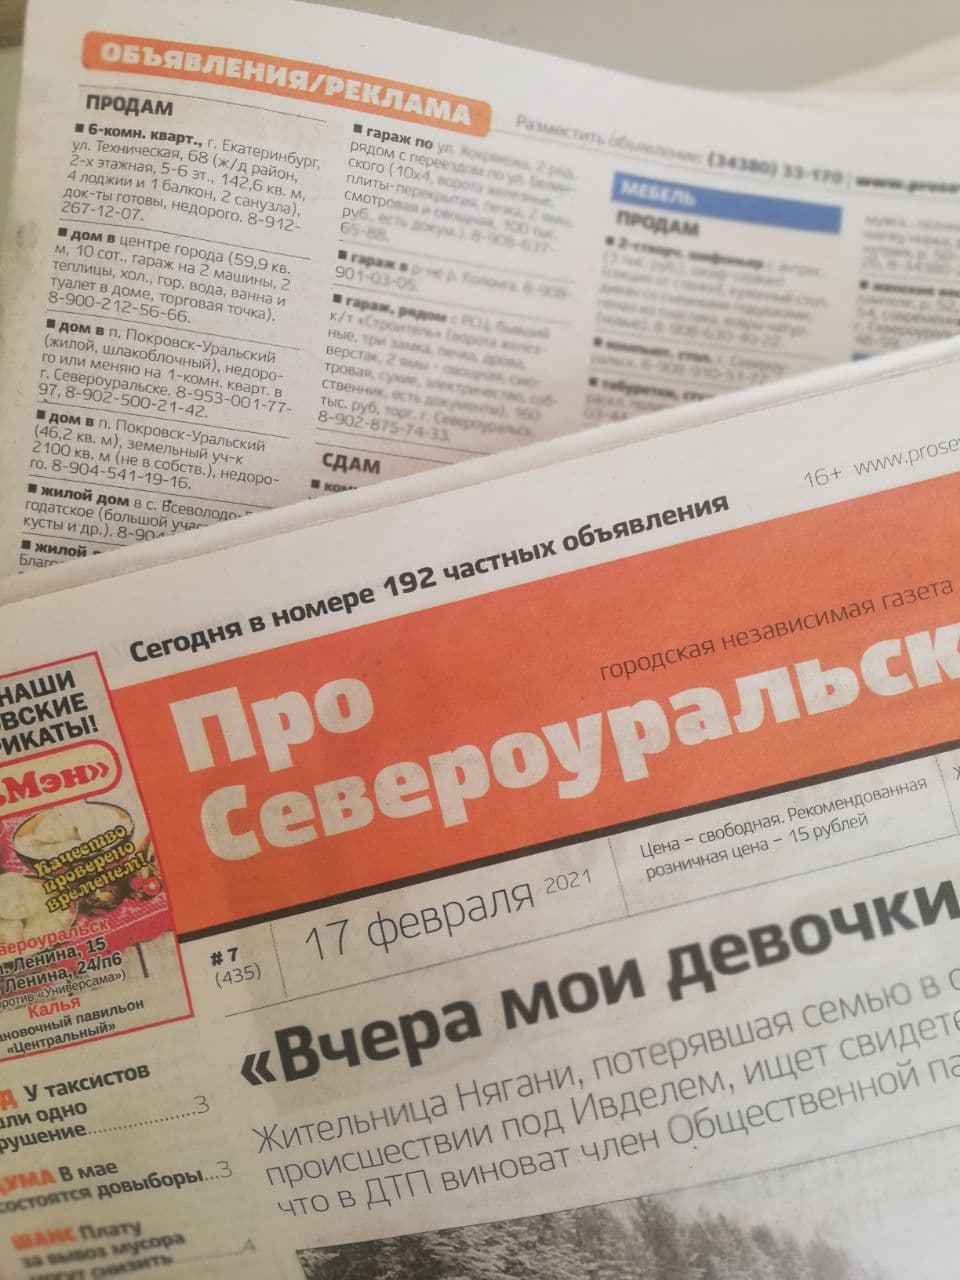 Объявления из газеты "ПроСевероуральск.ru" № 10 от 10 марта 2021 года